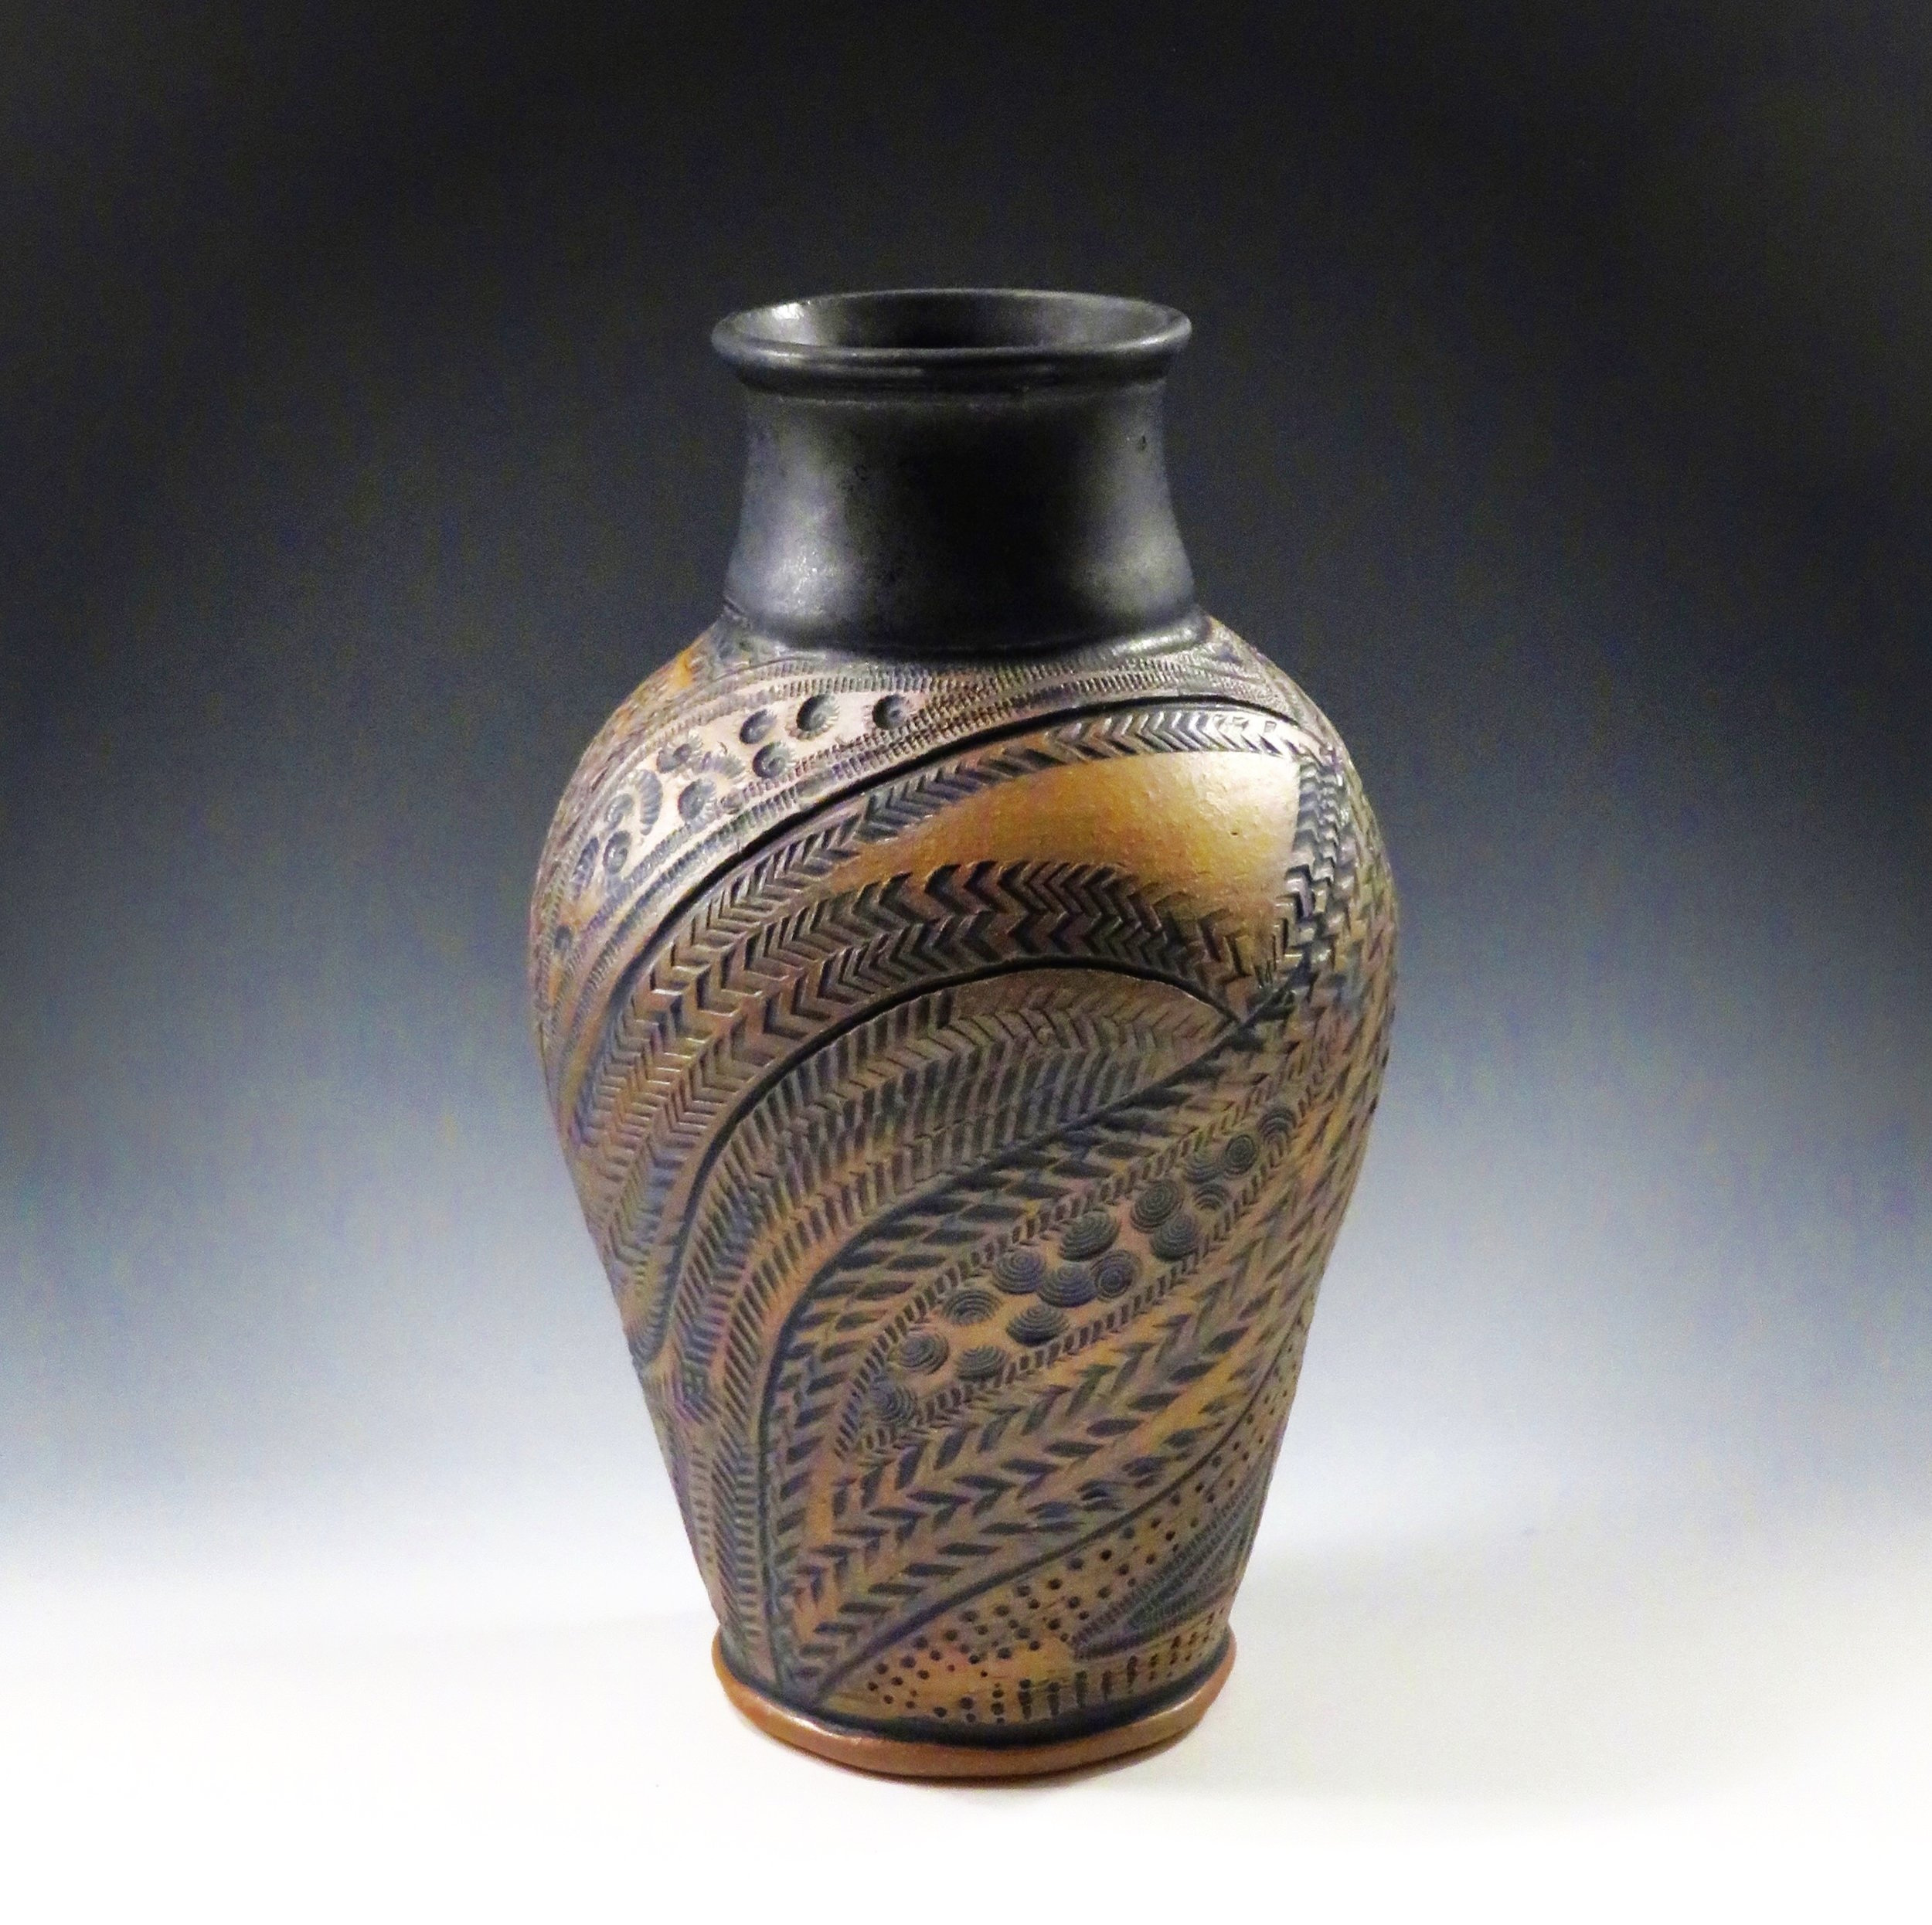 Brown/ black vase, carved and stamped